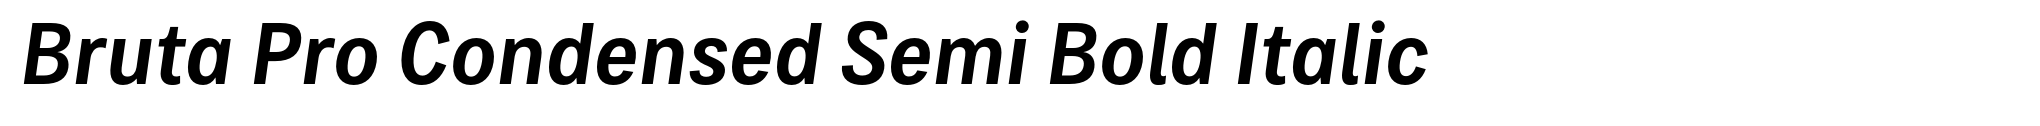 Bruta Pro Condensed Semi Bold Italic image